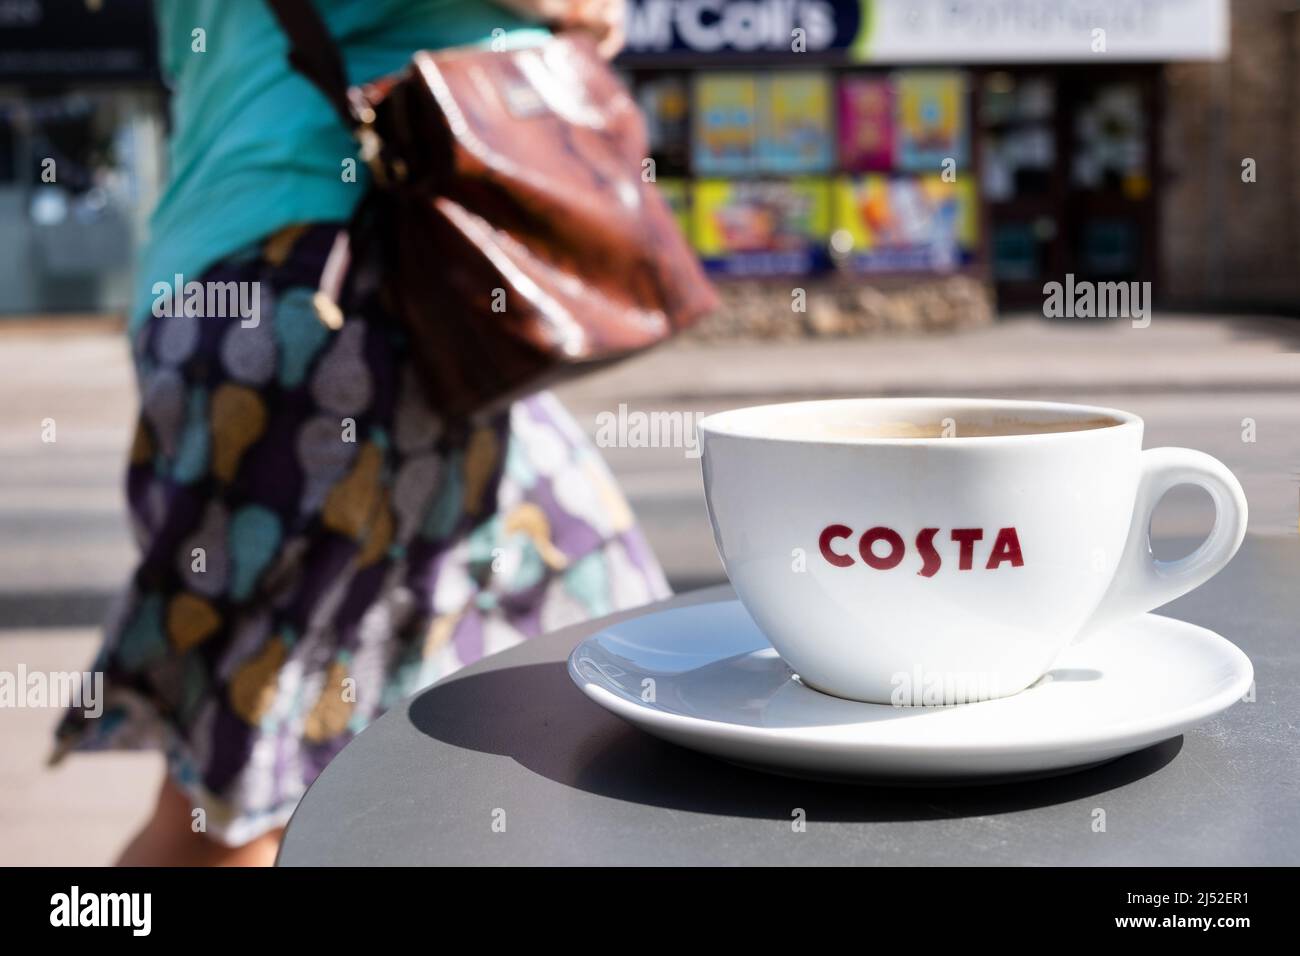 Una taza de café Costa, mostrando claramente el logotipo de la compañía, en una mesa exterior en una calle alta del Reino Unido. Una mujer está pasando detrás de la mesa Foto de stock